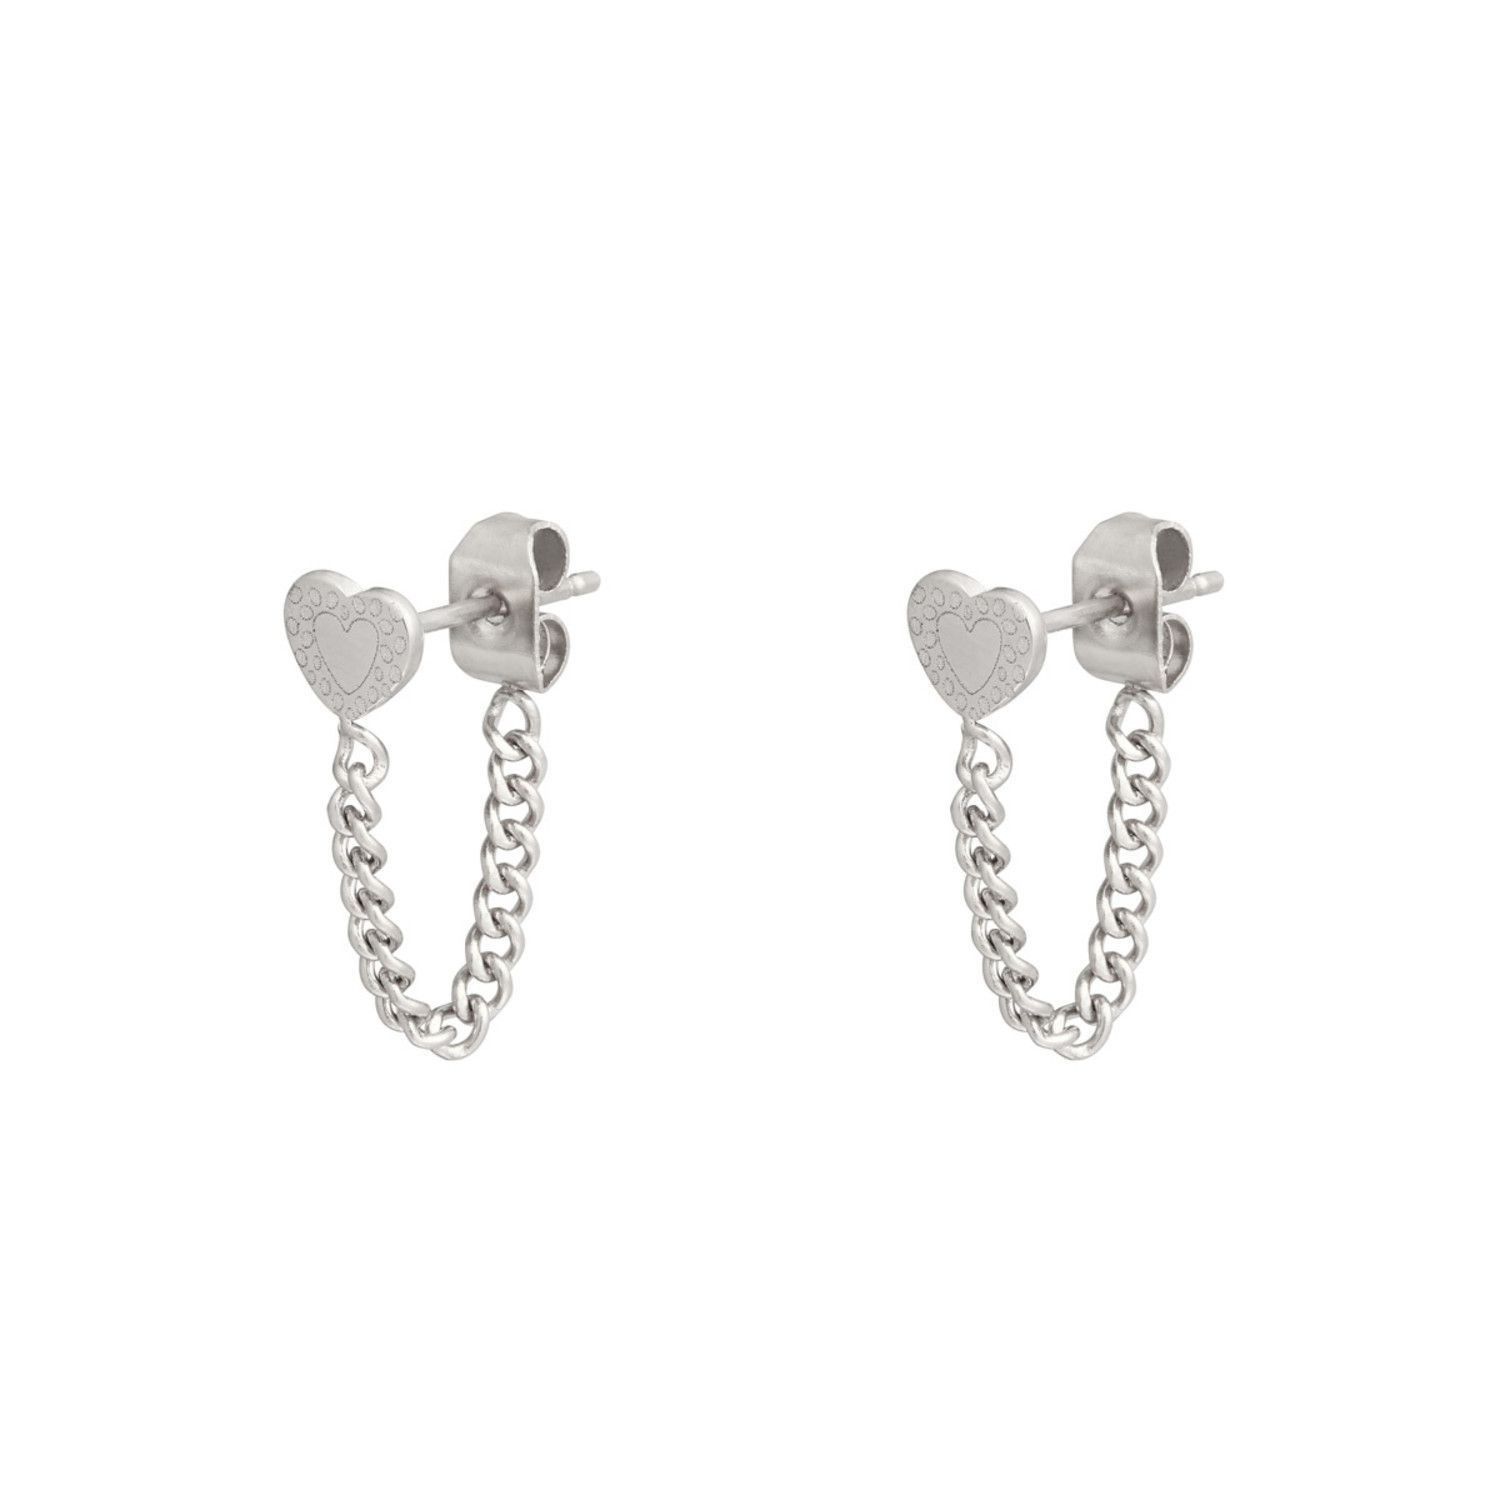 Silver Heart Chain Earrings - Hello My Love